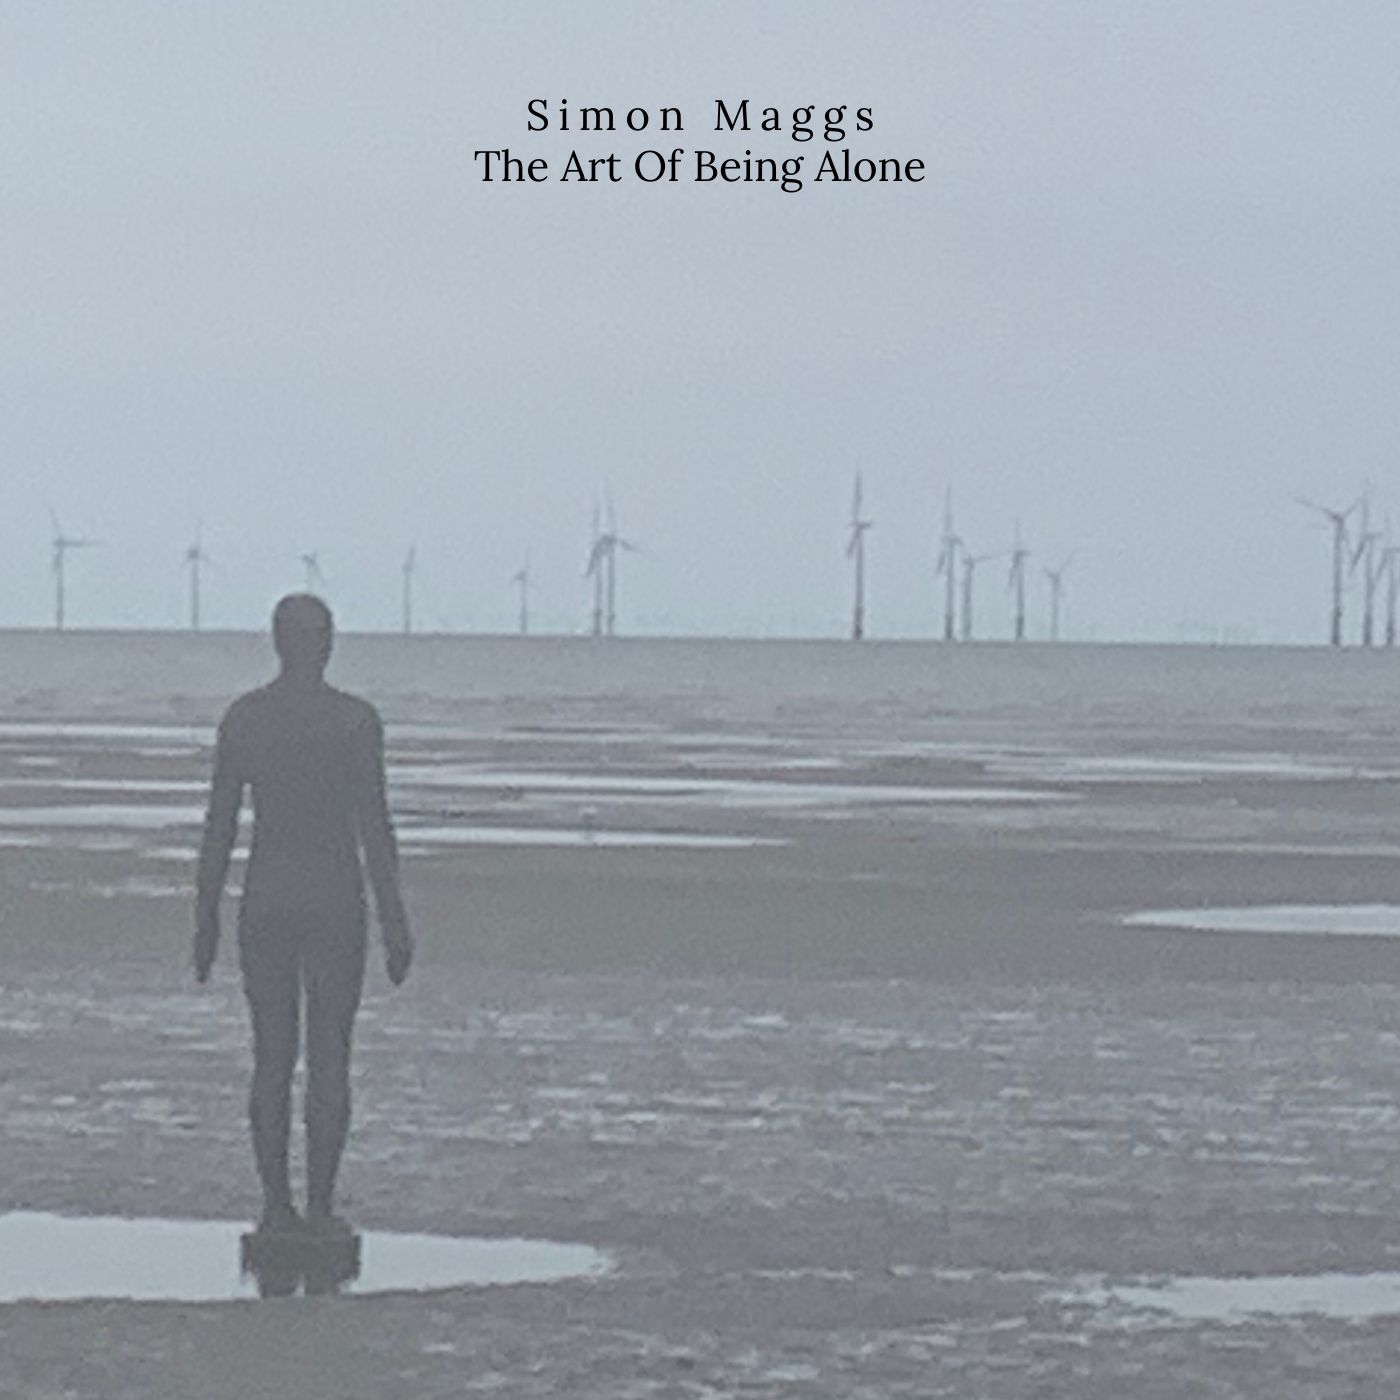 Simon Maggs